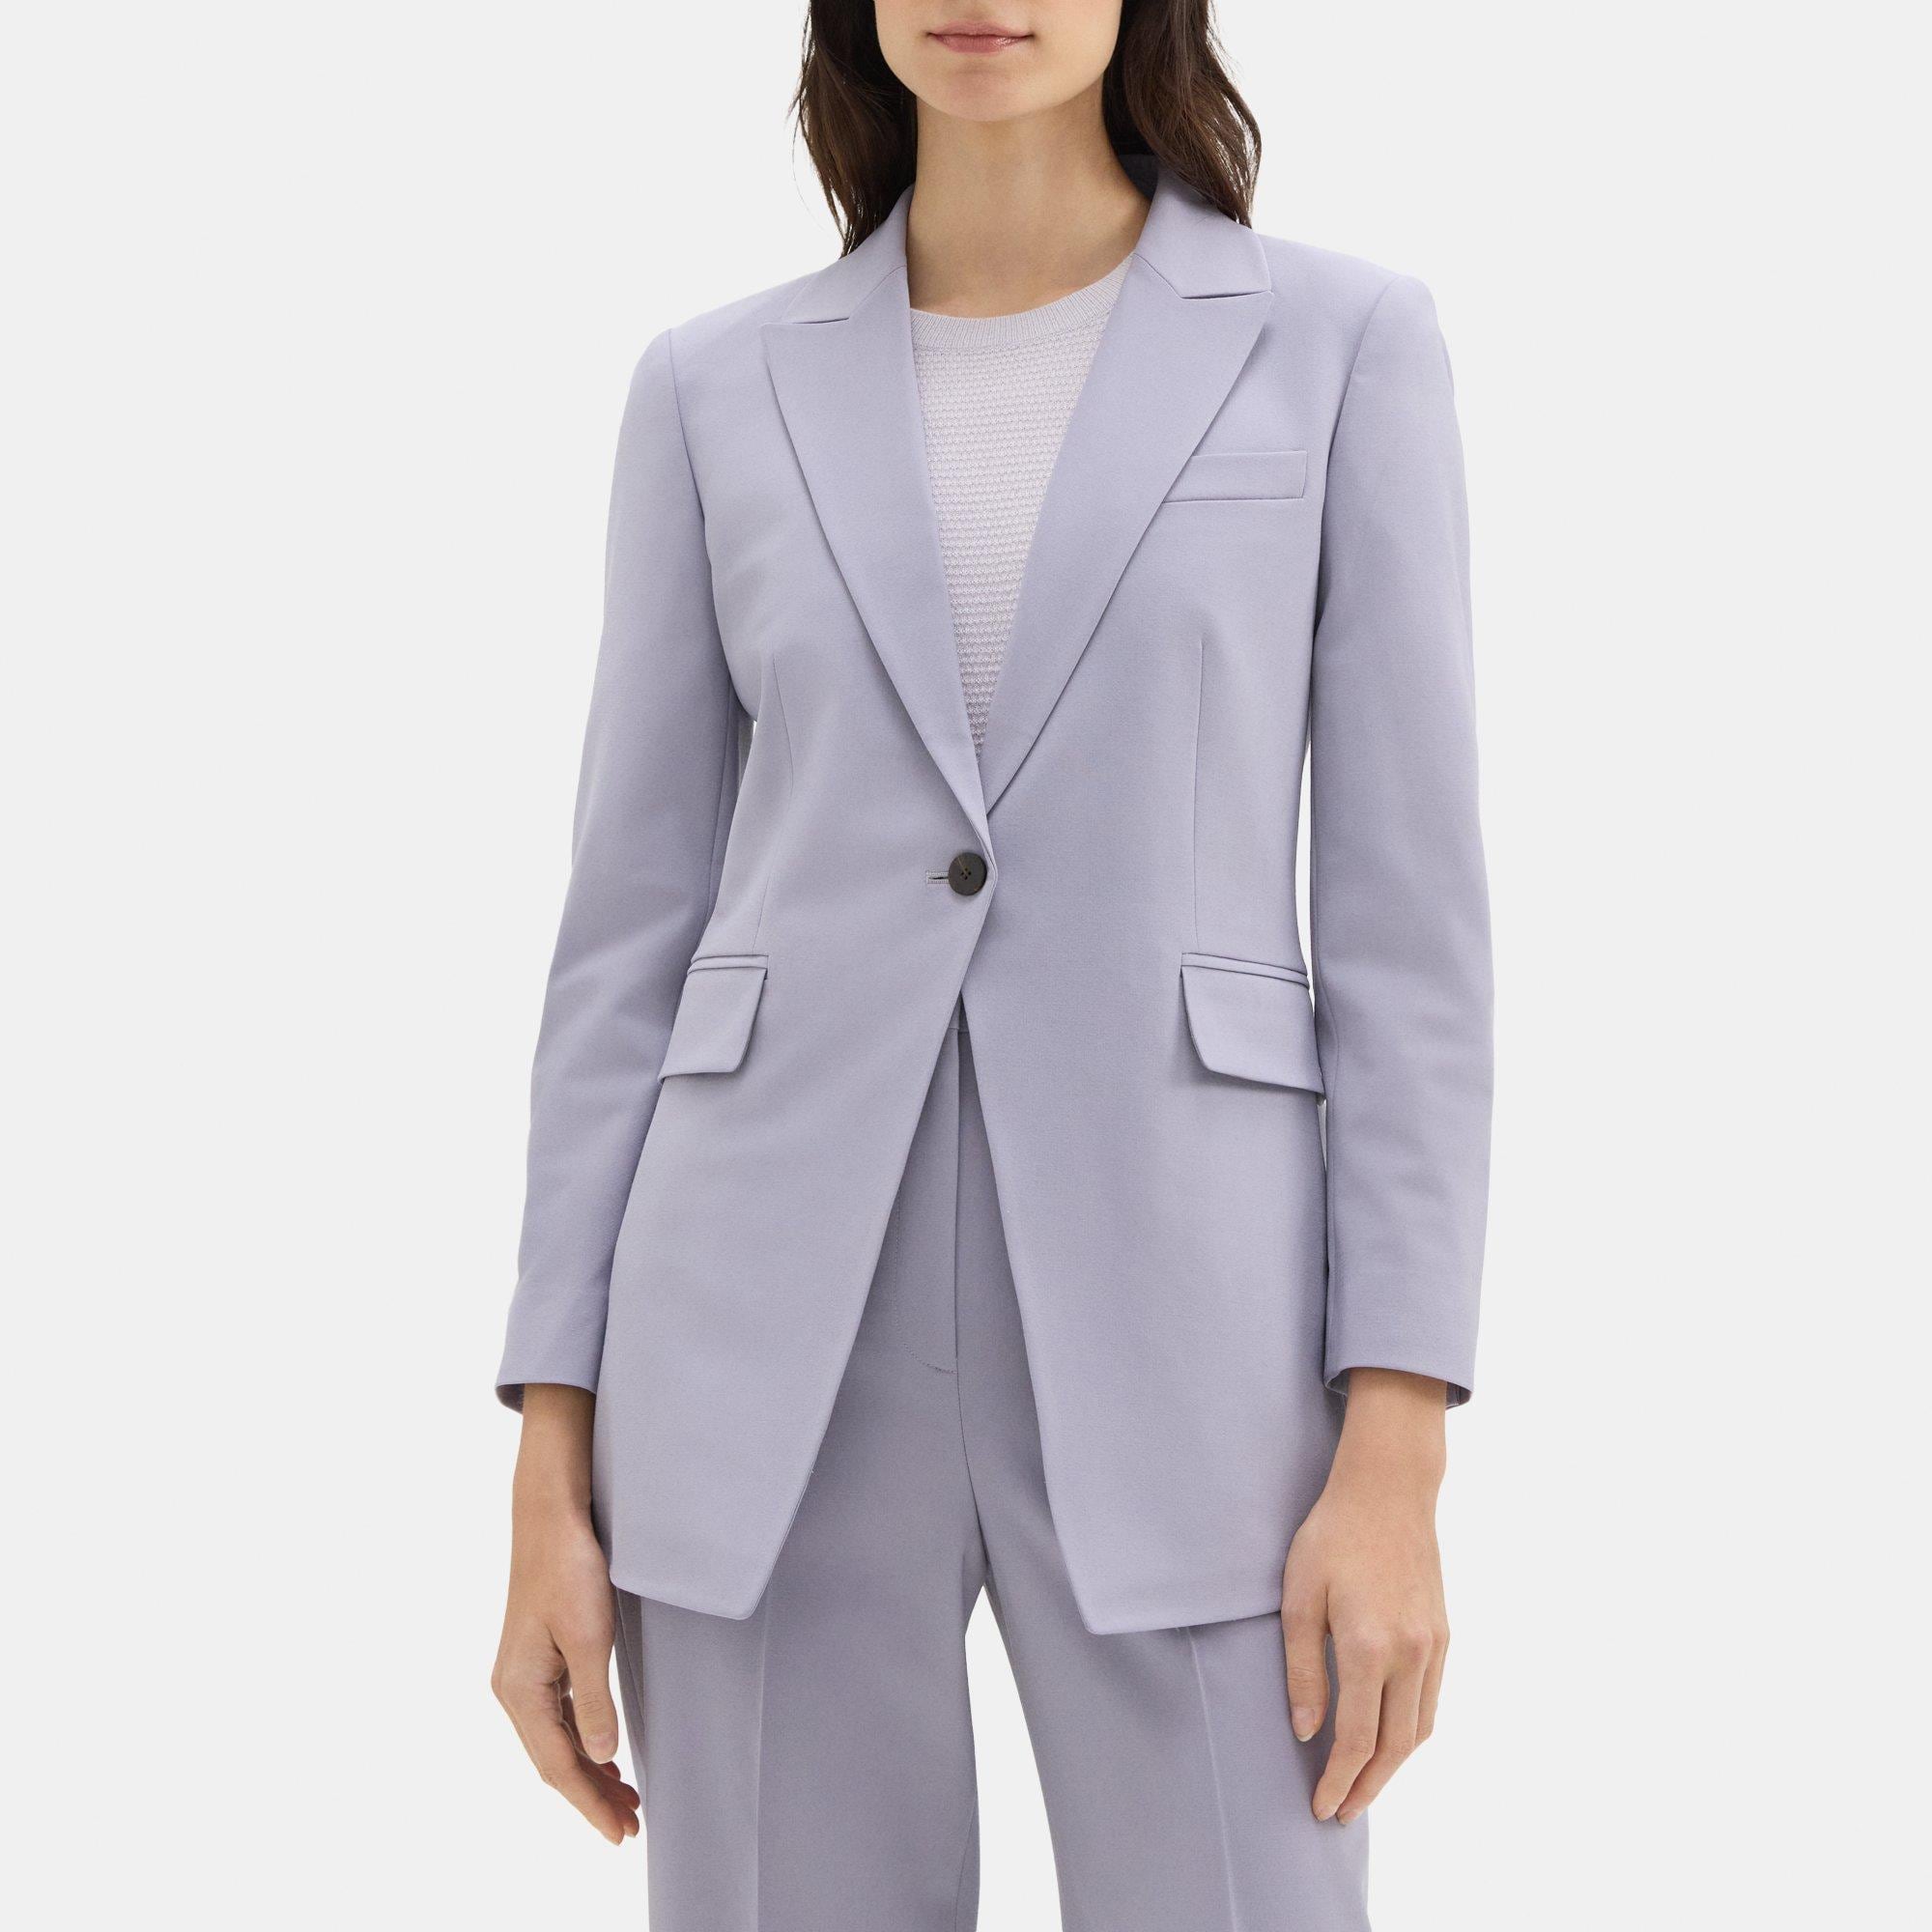 Women's Suit Shop Size 14 S Pant Suit - clothing & accessories